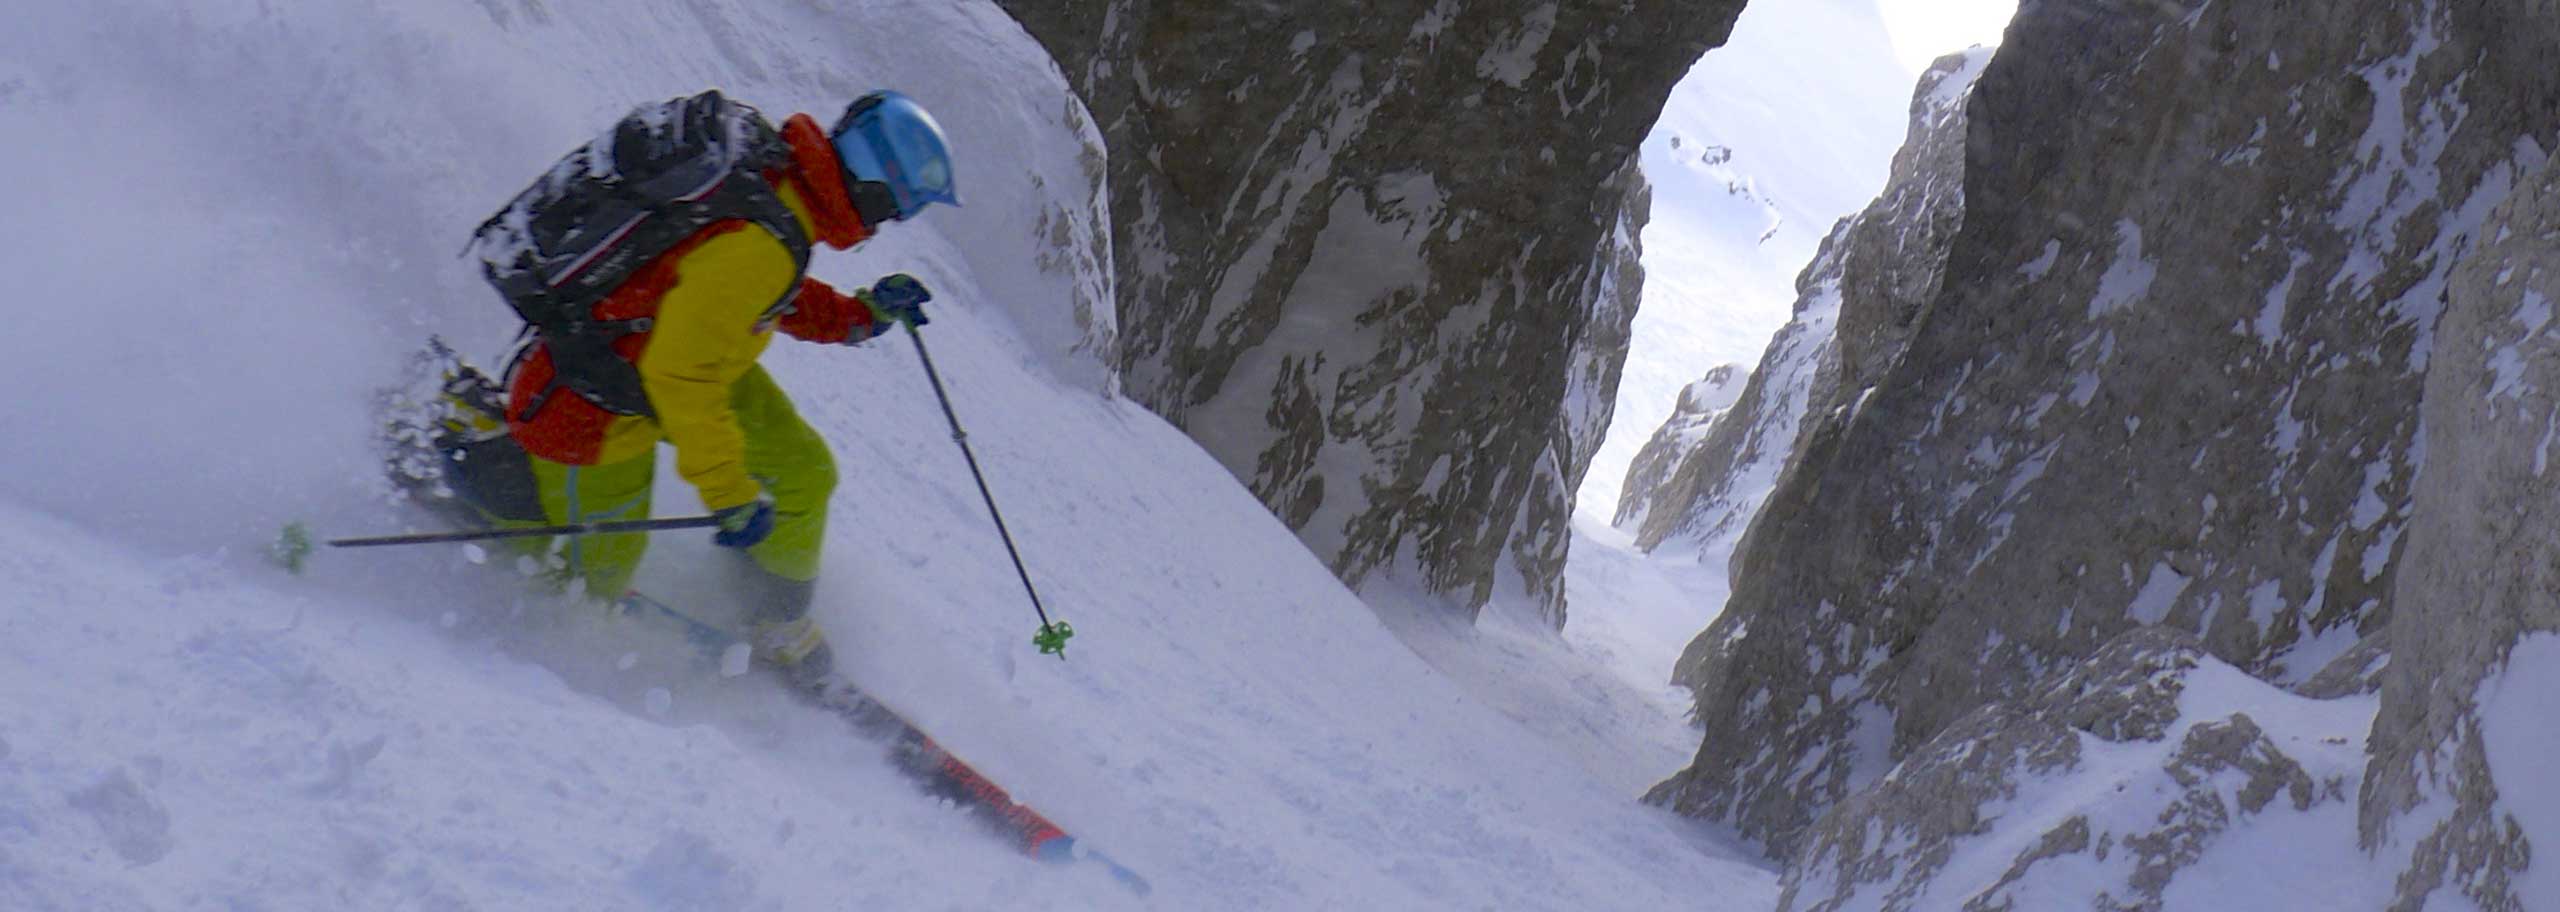 Sci Alpinismo con Guida Alpina in Val Gardena